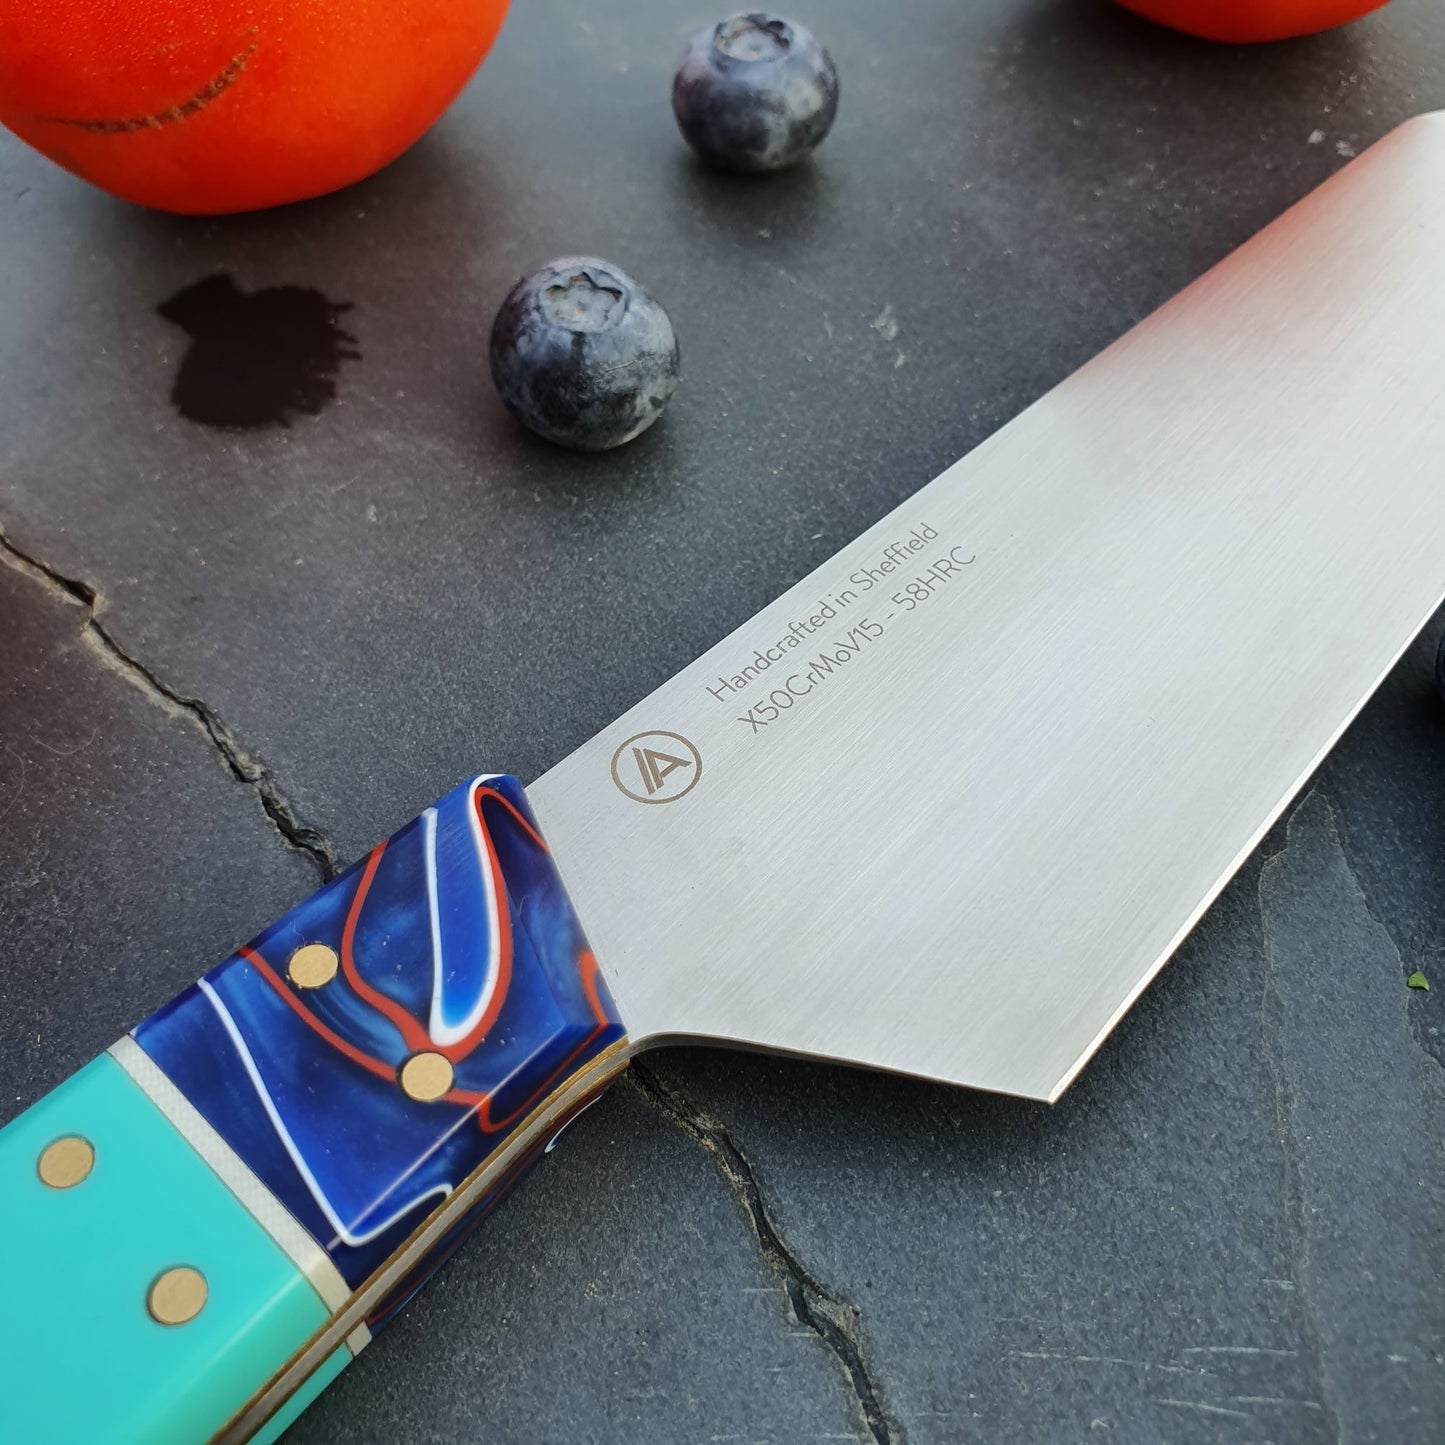 Chef's Knife "Hawaii"